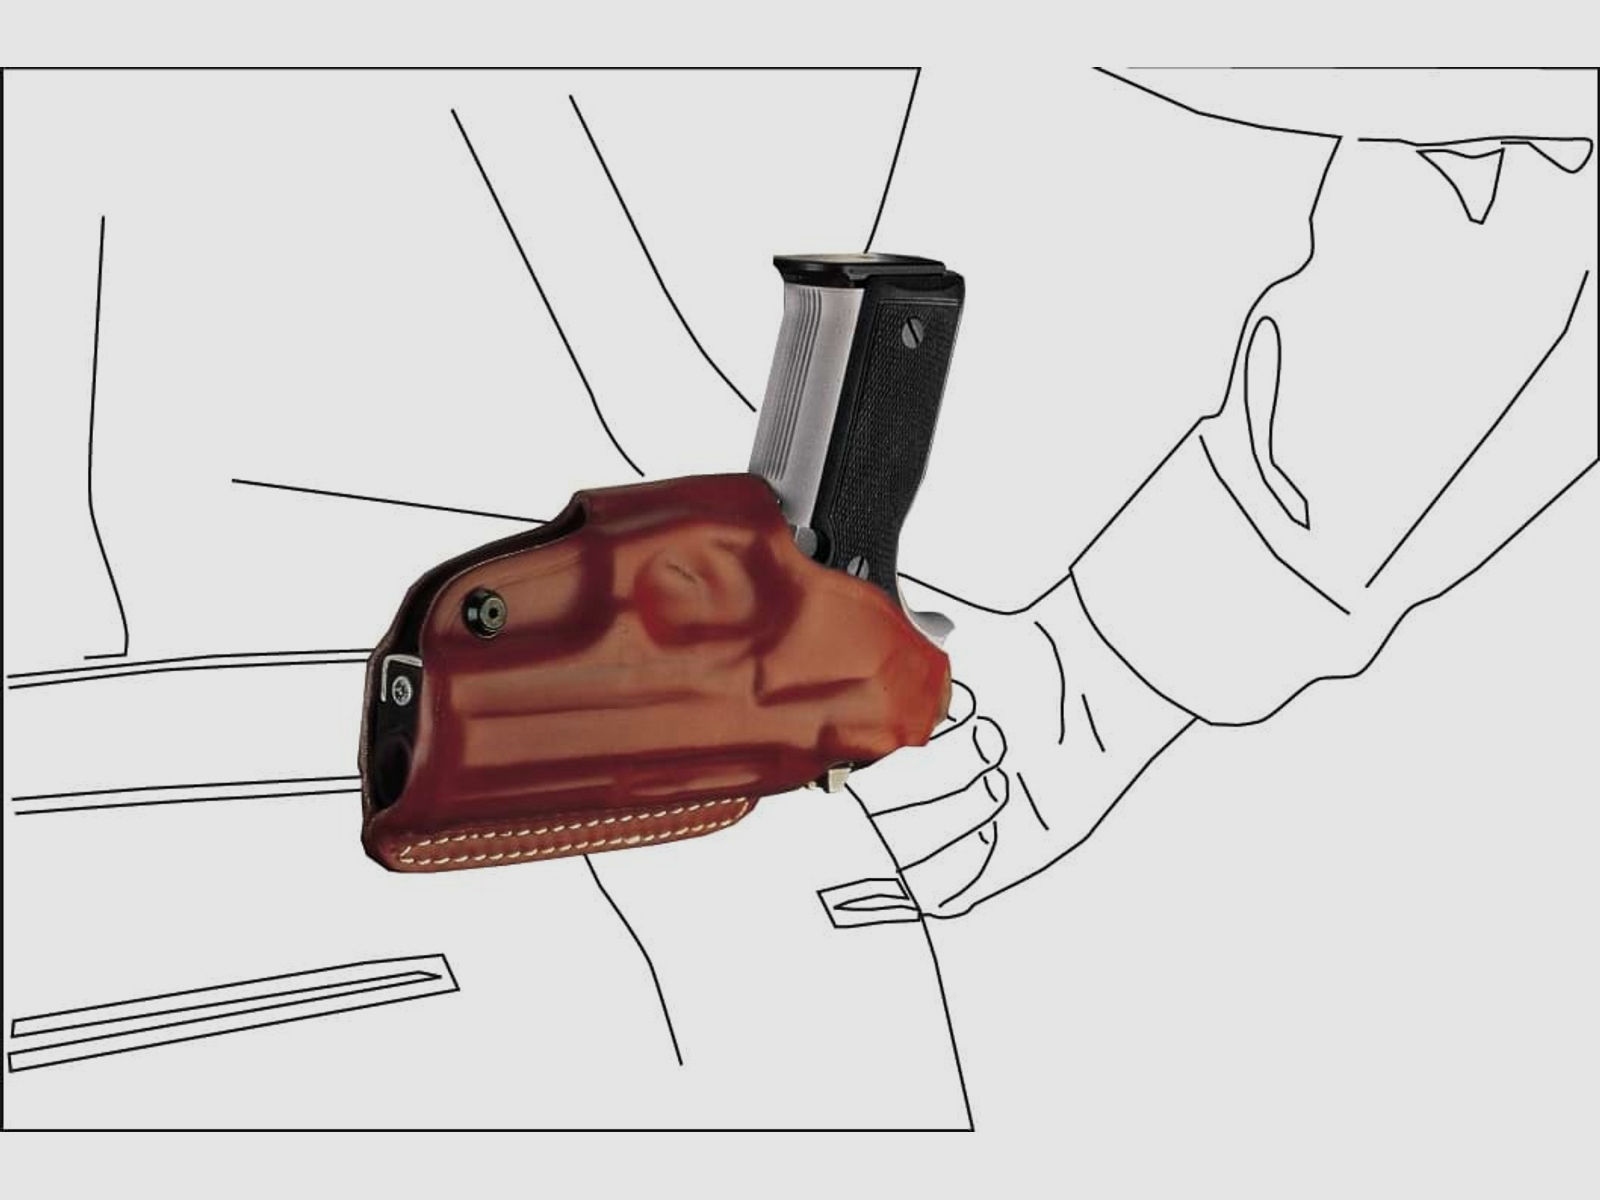 Schnellziehholster mit drei Tragepositionen Glock 43/43X/48, Walther P22/P22Q-Schwarz-Rechtshänder